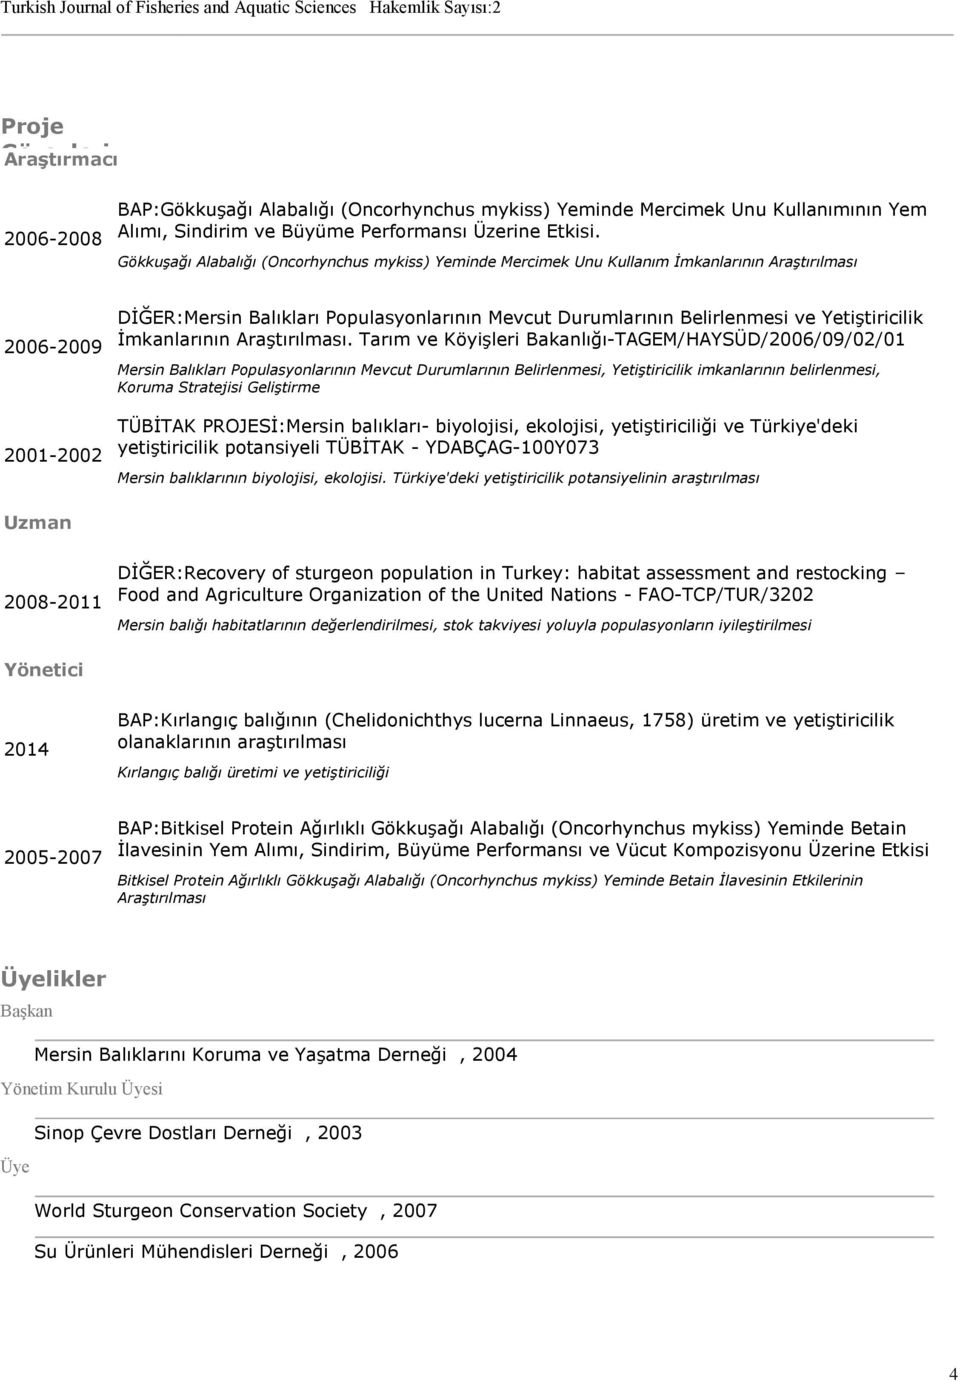 Gökkuşağı Alabalığı (Oncorhynchus mykiss) Yeminde Mercimek Unu Kullanım İmkanlarının Araştırılması 2006-2009 2001-2002 DİĞER:Mersin Balıkları Populasyonlarının Mevcut Durumlarının Belirlenmesi ve